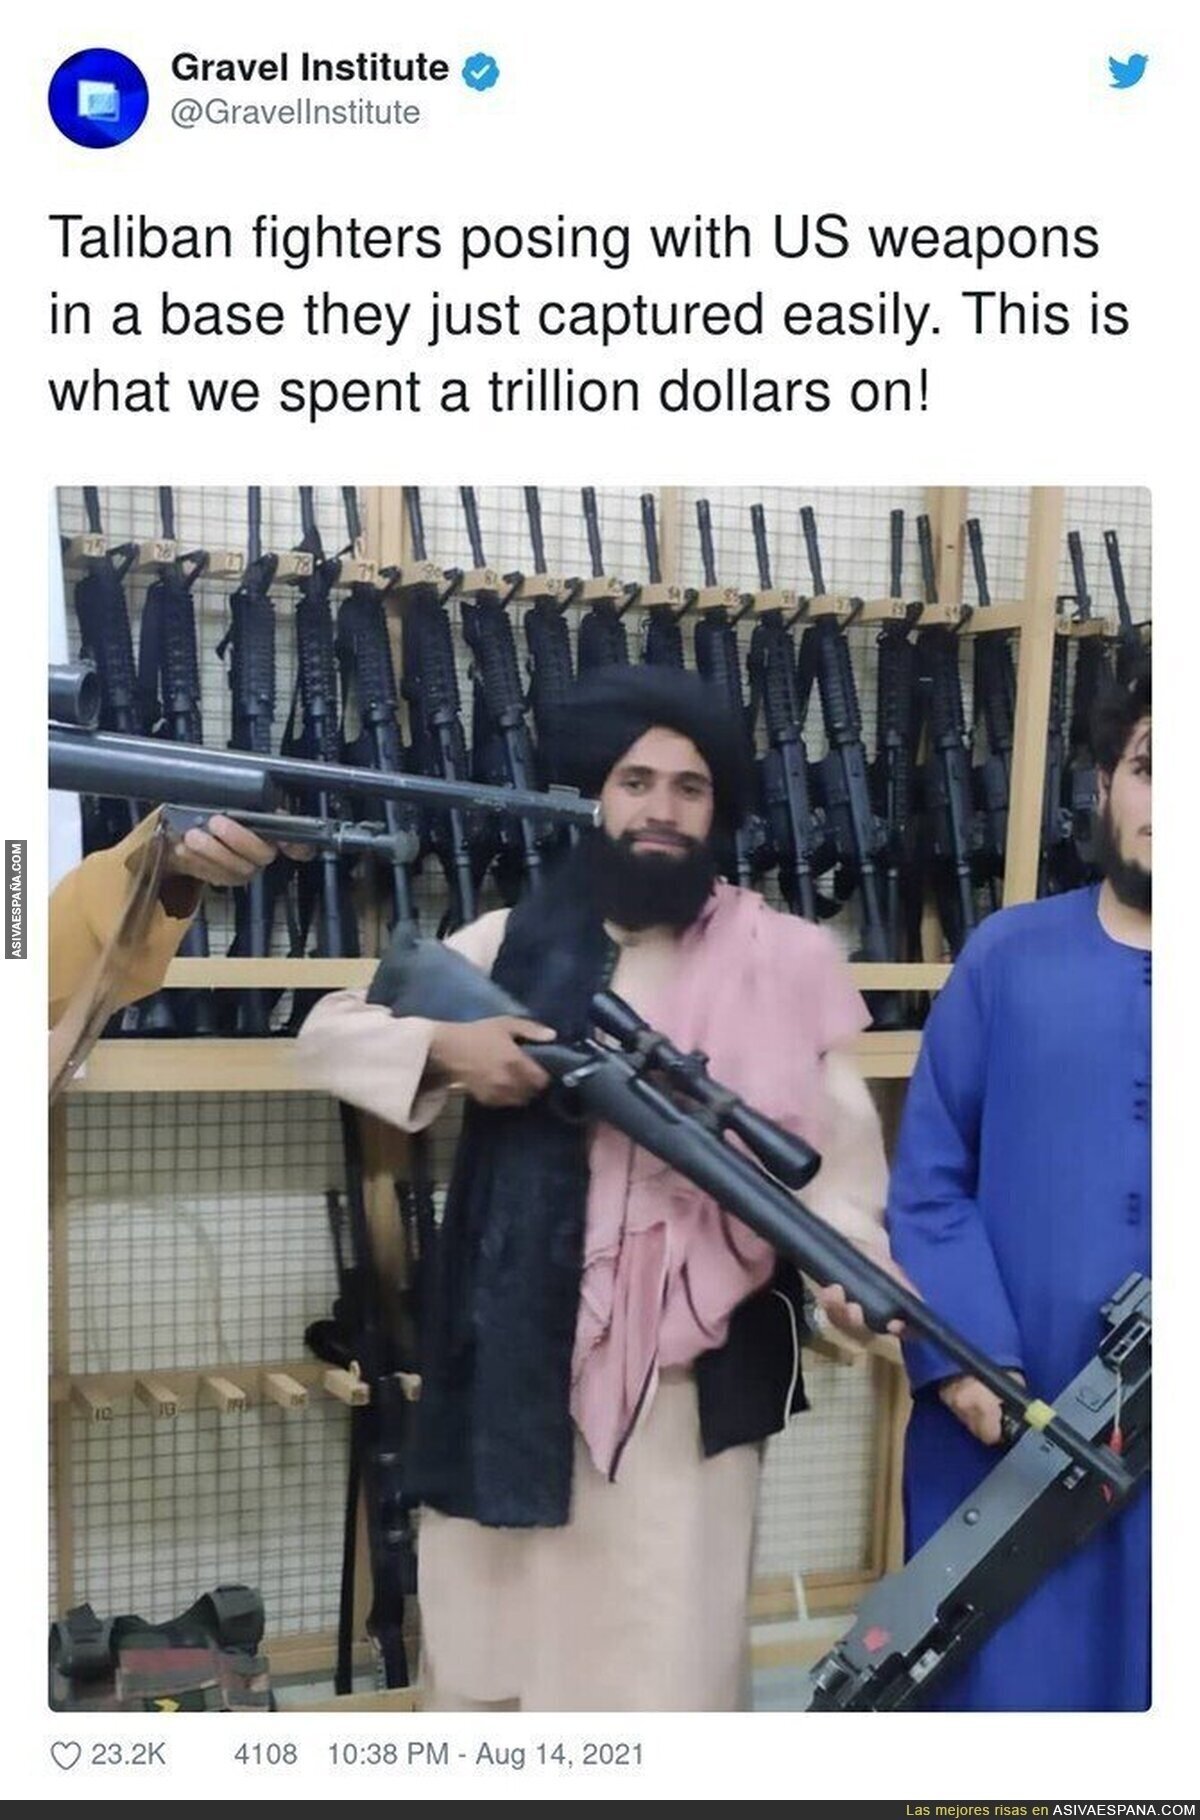 Los talibán posando con las armas estadounidenses